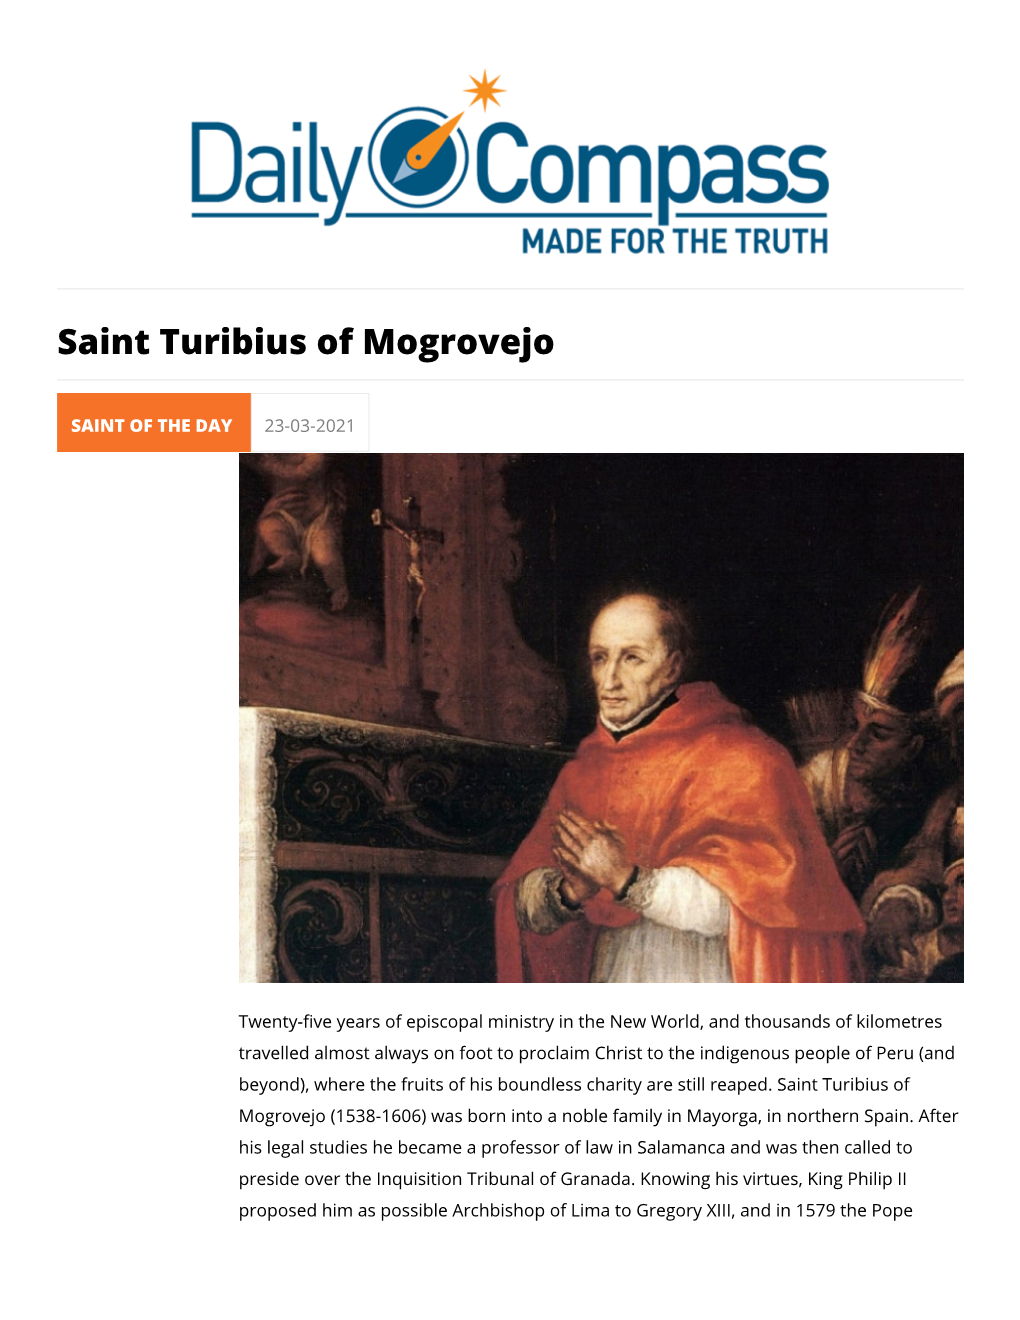 Saint Turibius of Mogrovejo